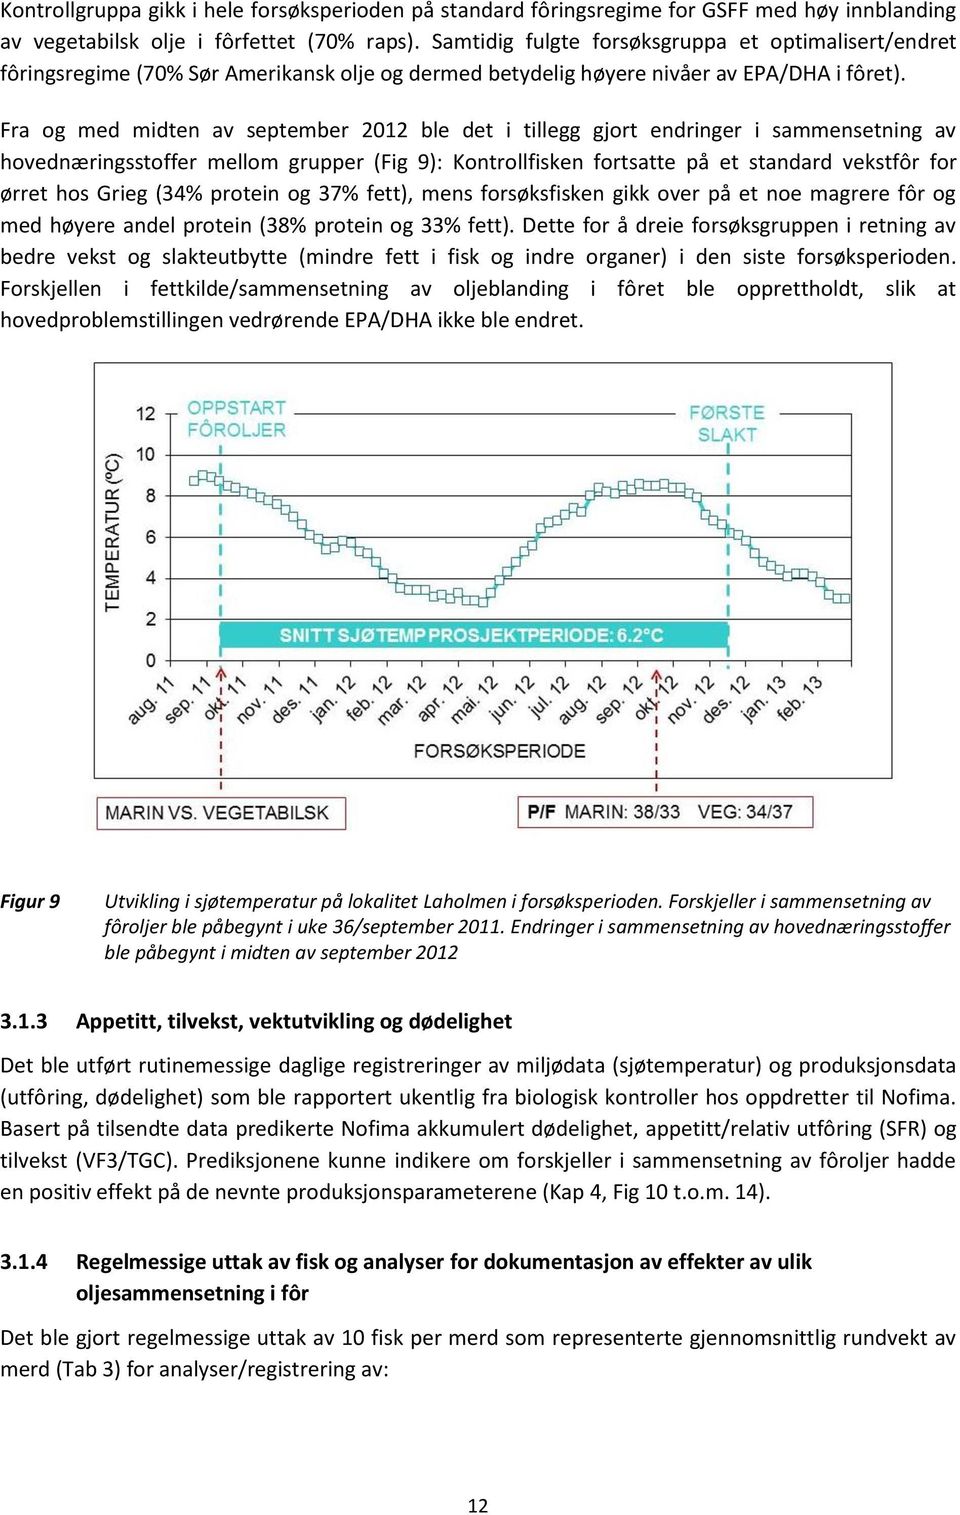 Fra og med midten av september 2012 ble det i tillegg gjort endringer i sammensetning av hovednæringsstoffer mellom grupper (Fig 9): Kontrollfisken fortsatte på et standard vekstfôr for ørret hos